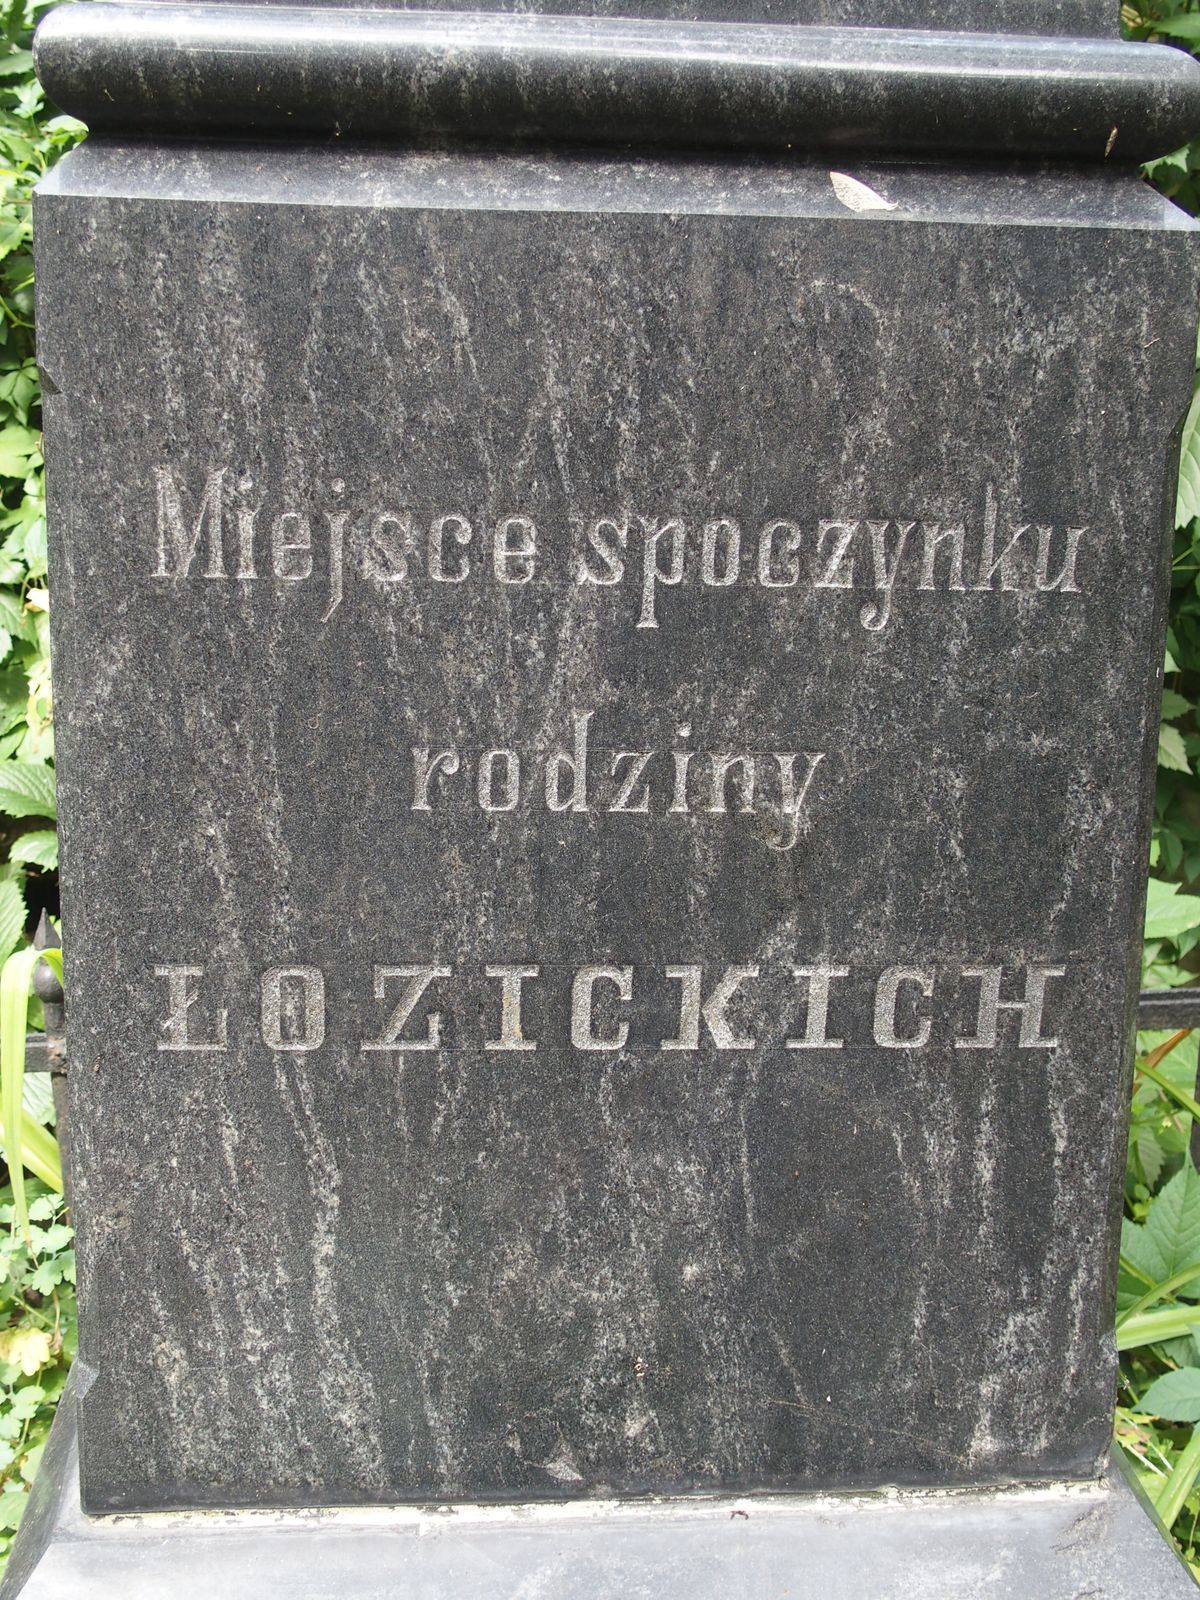 Fragment of a tombstone of the Lozitskiy family, Bajkova cemetery in Kiev, 2021